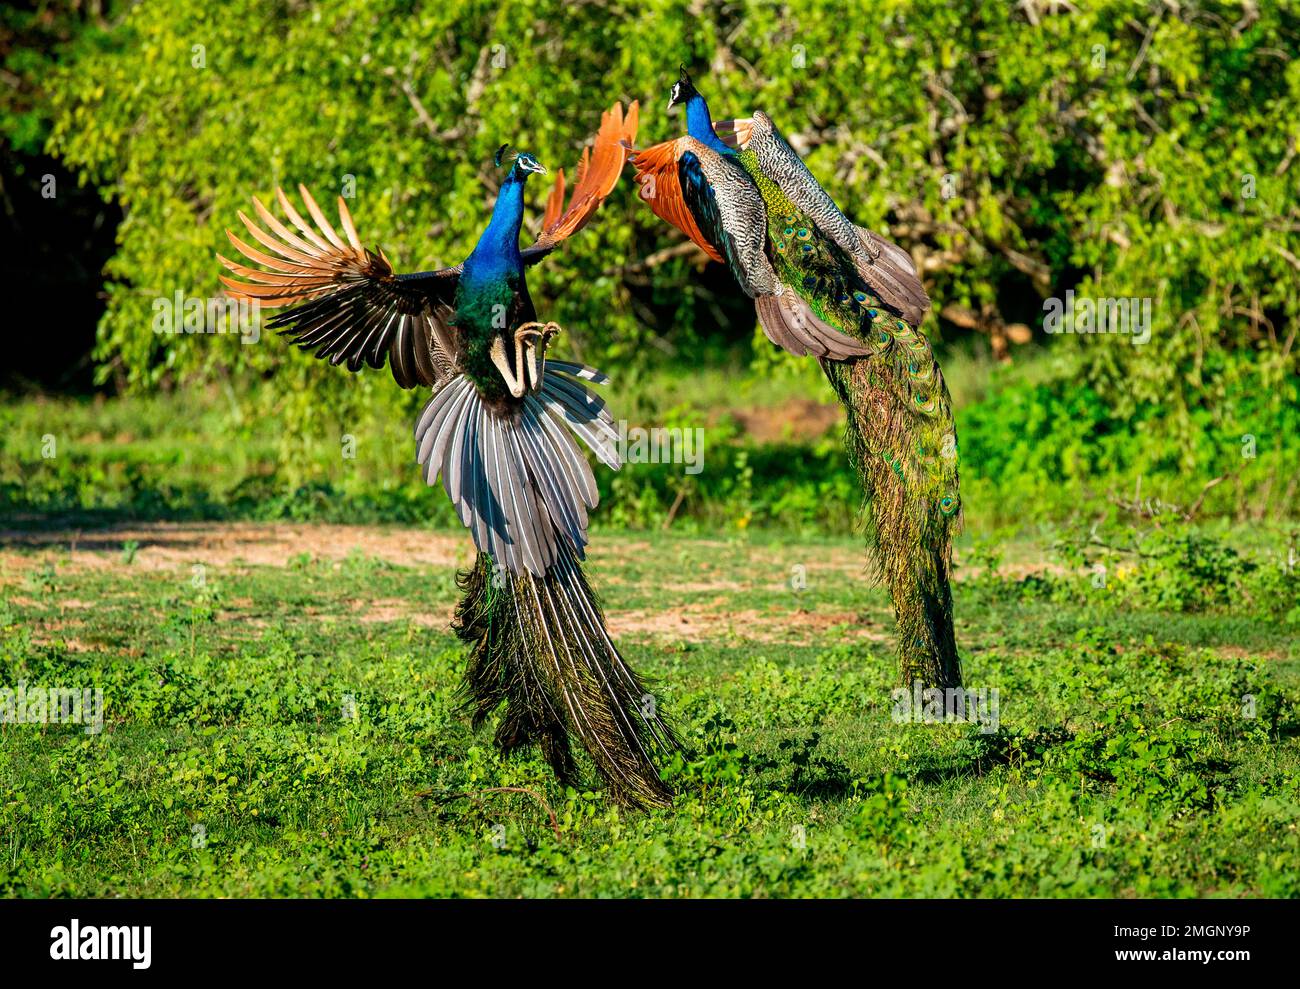 Deux paons (Pavo cristatus) se battent dans le parc national de Yala. Sri Lanka. Banque D'Images